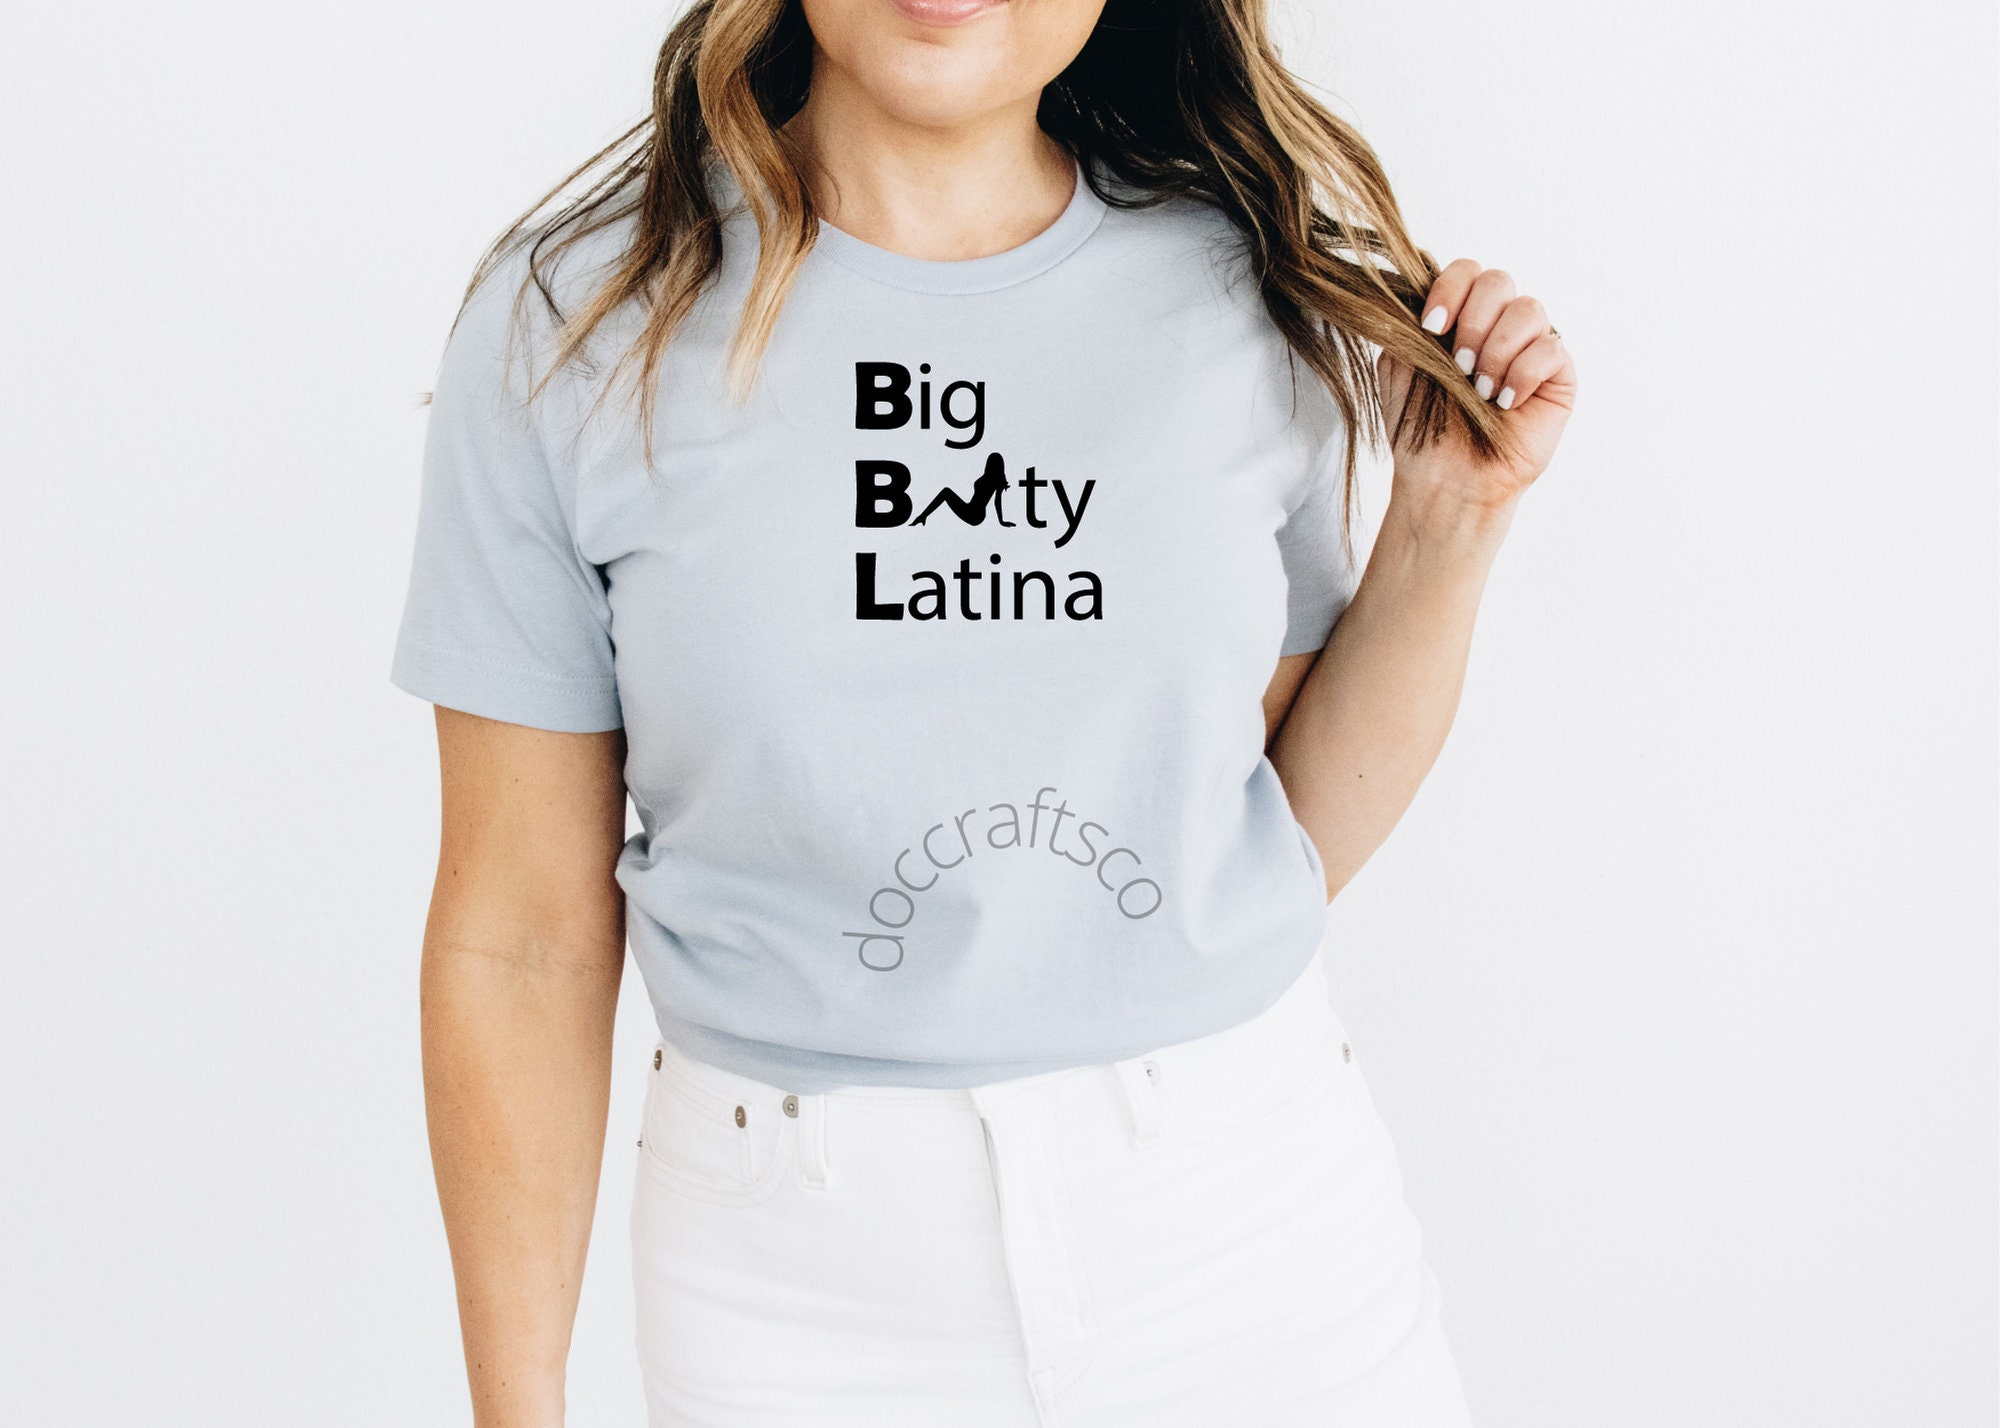 Sexy Booty Latina